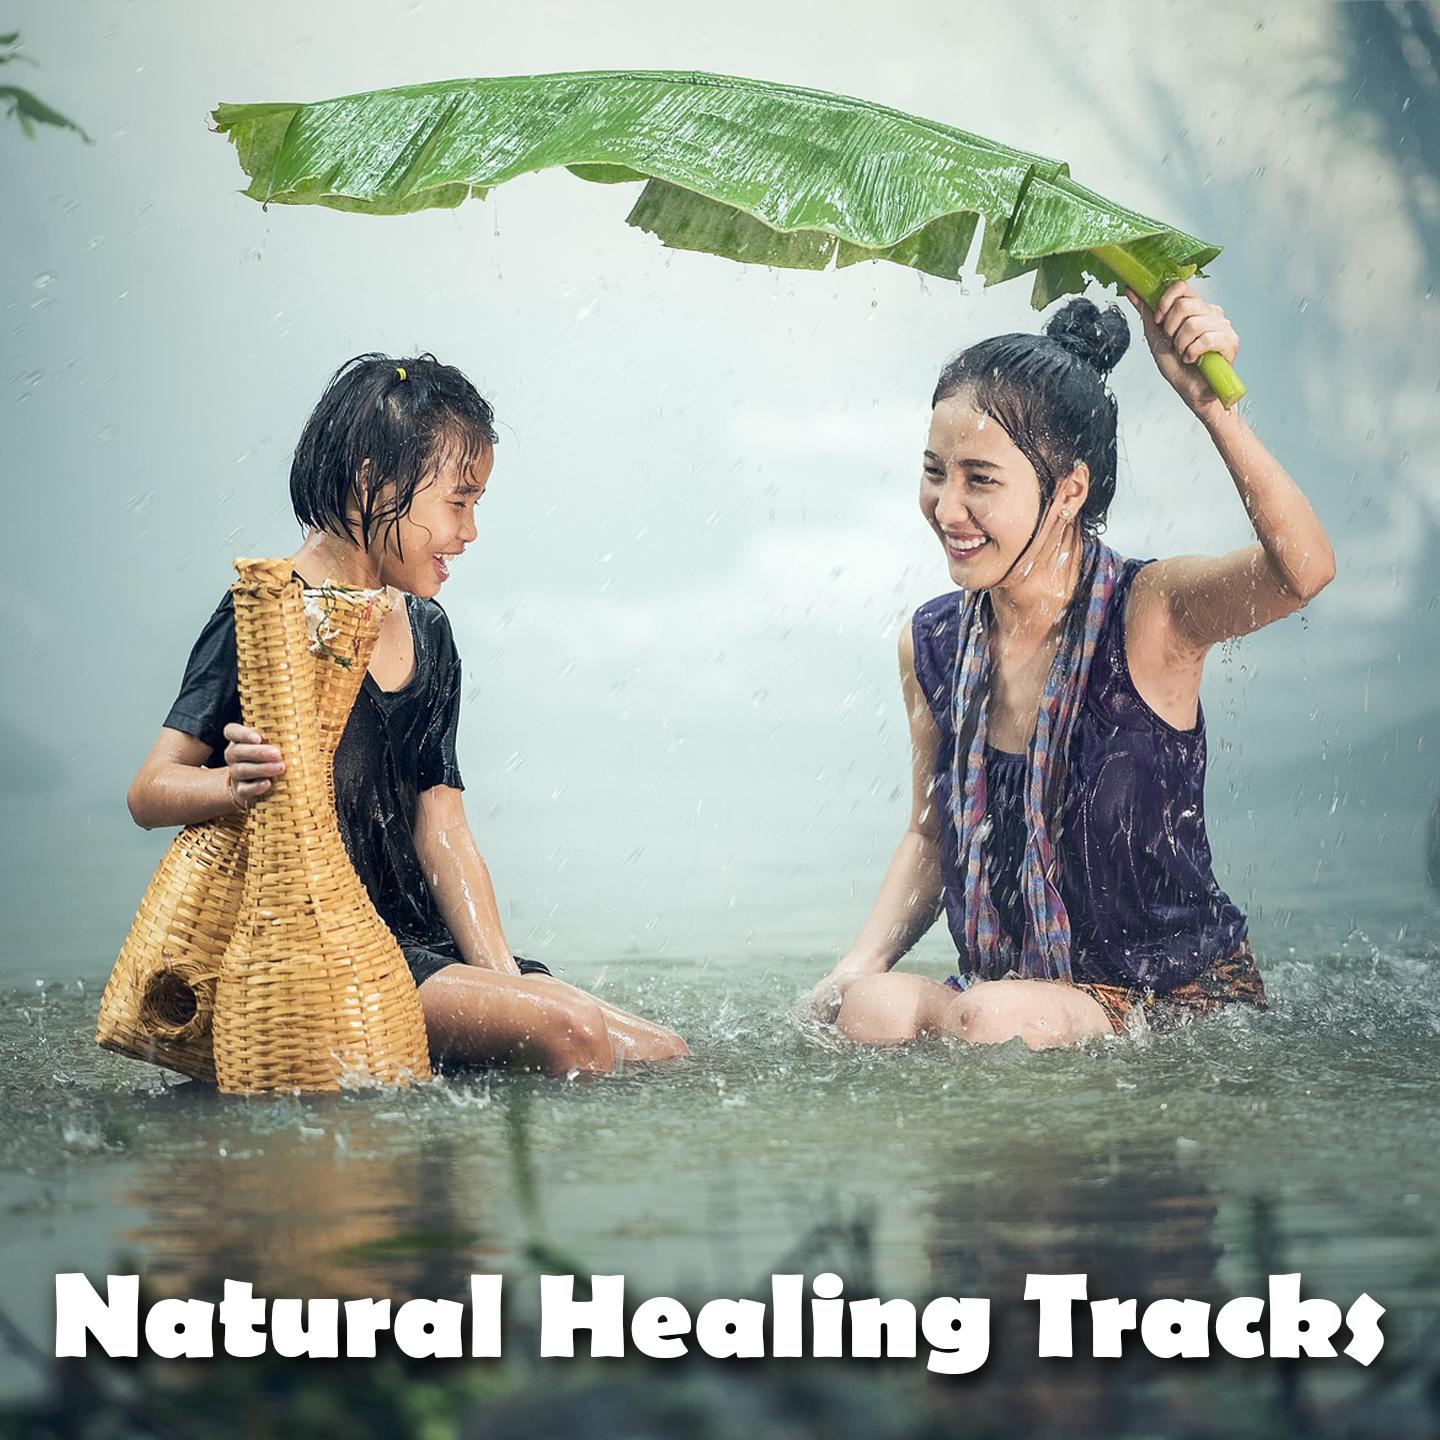 Natural Healing Tracks